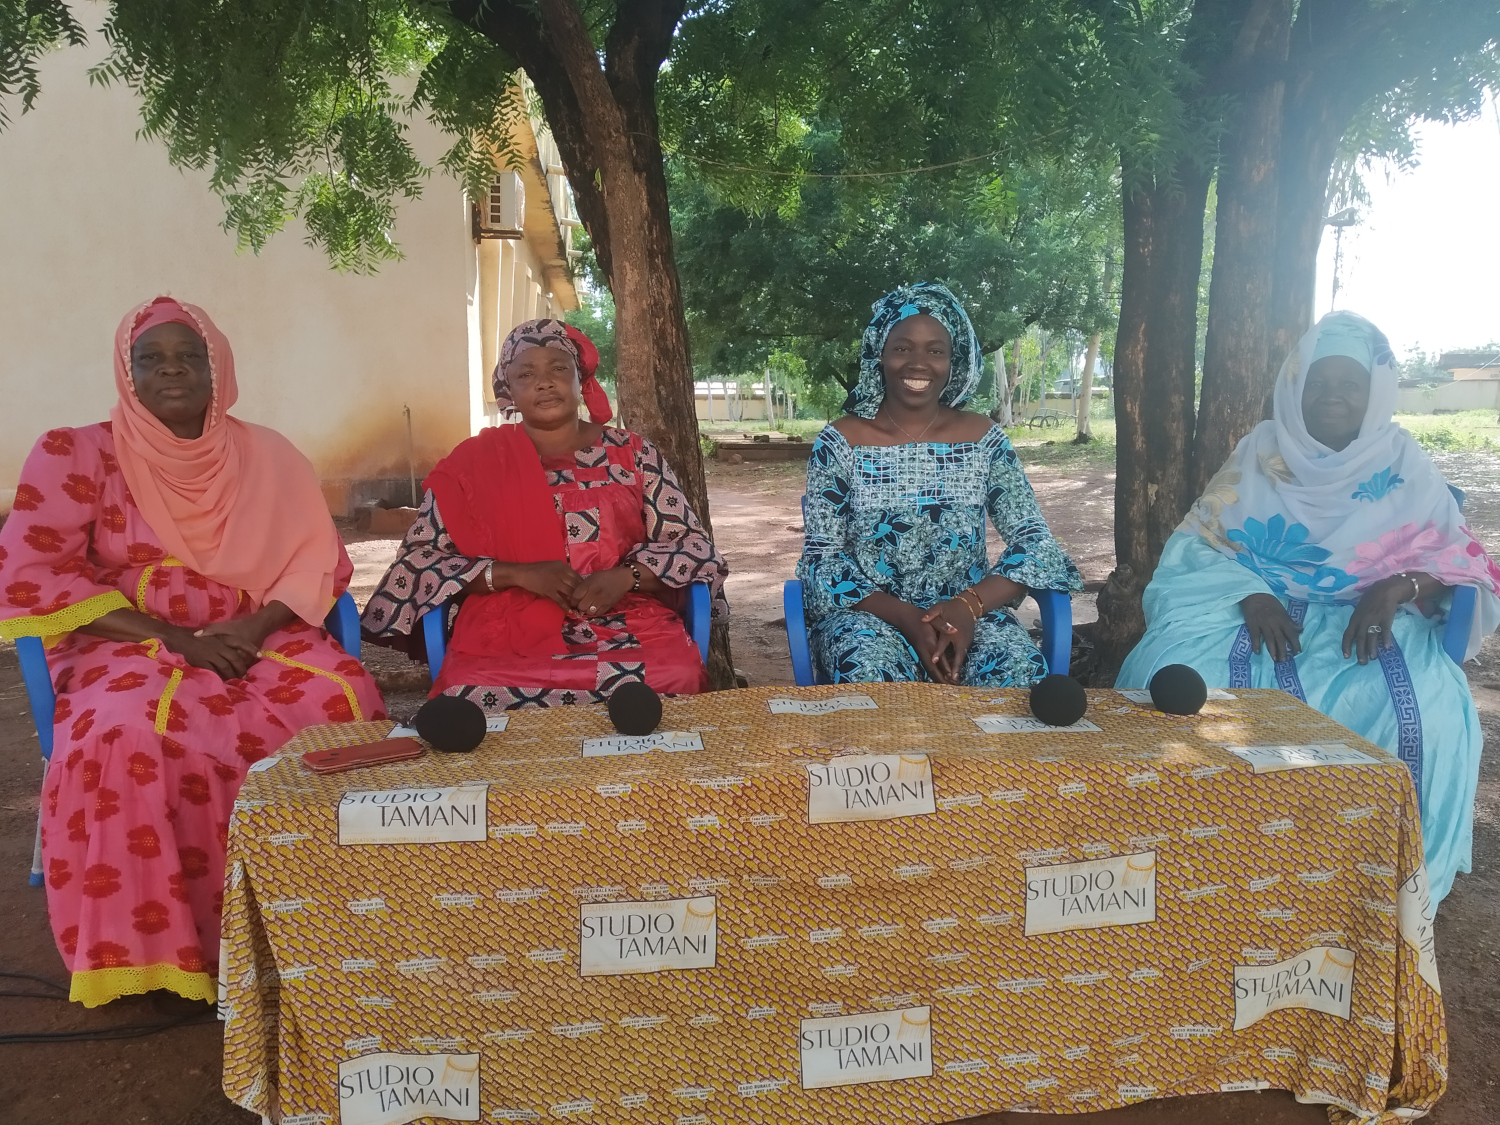 Les femmes de Dioila, leviers du développement social et économique et politique de la région